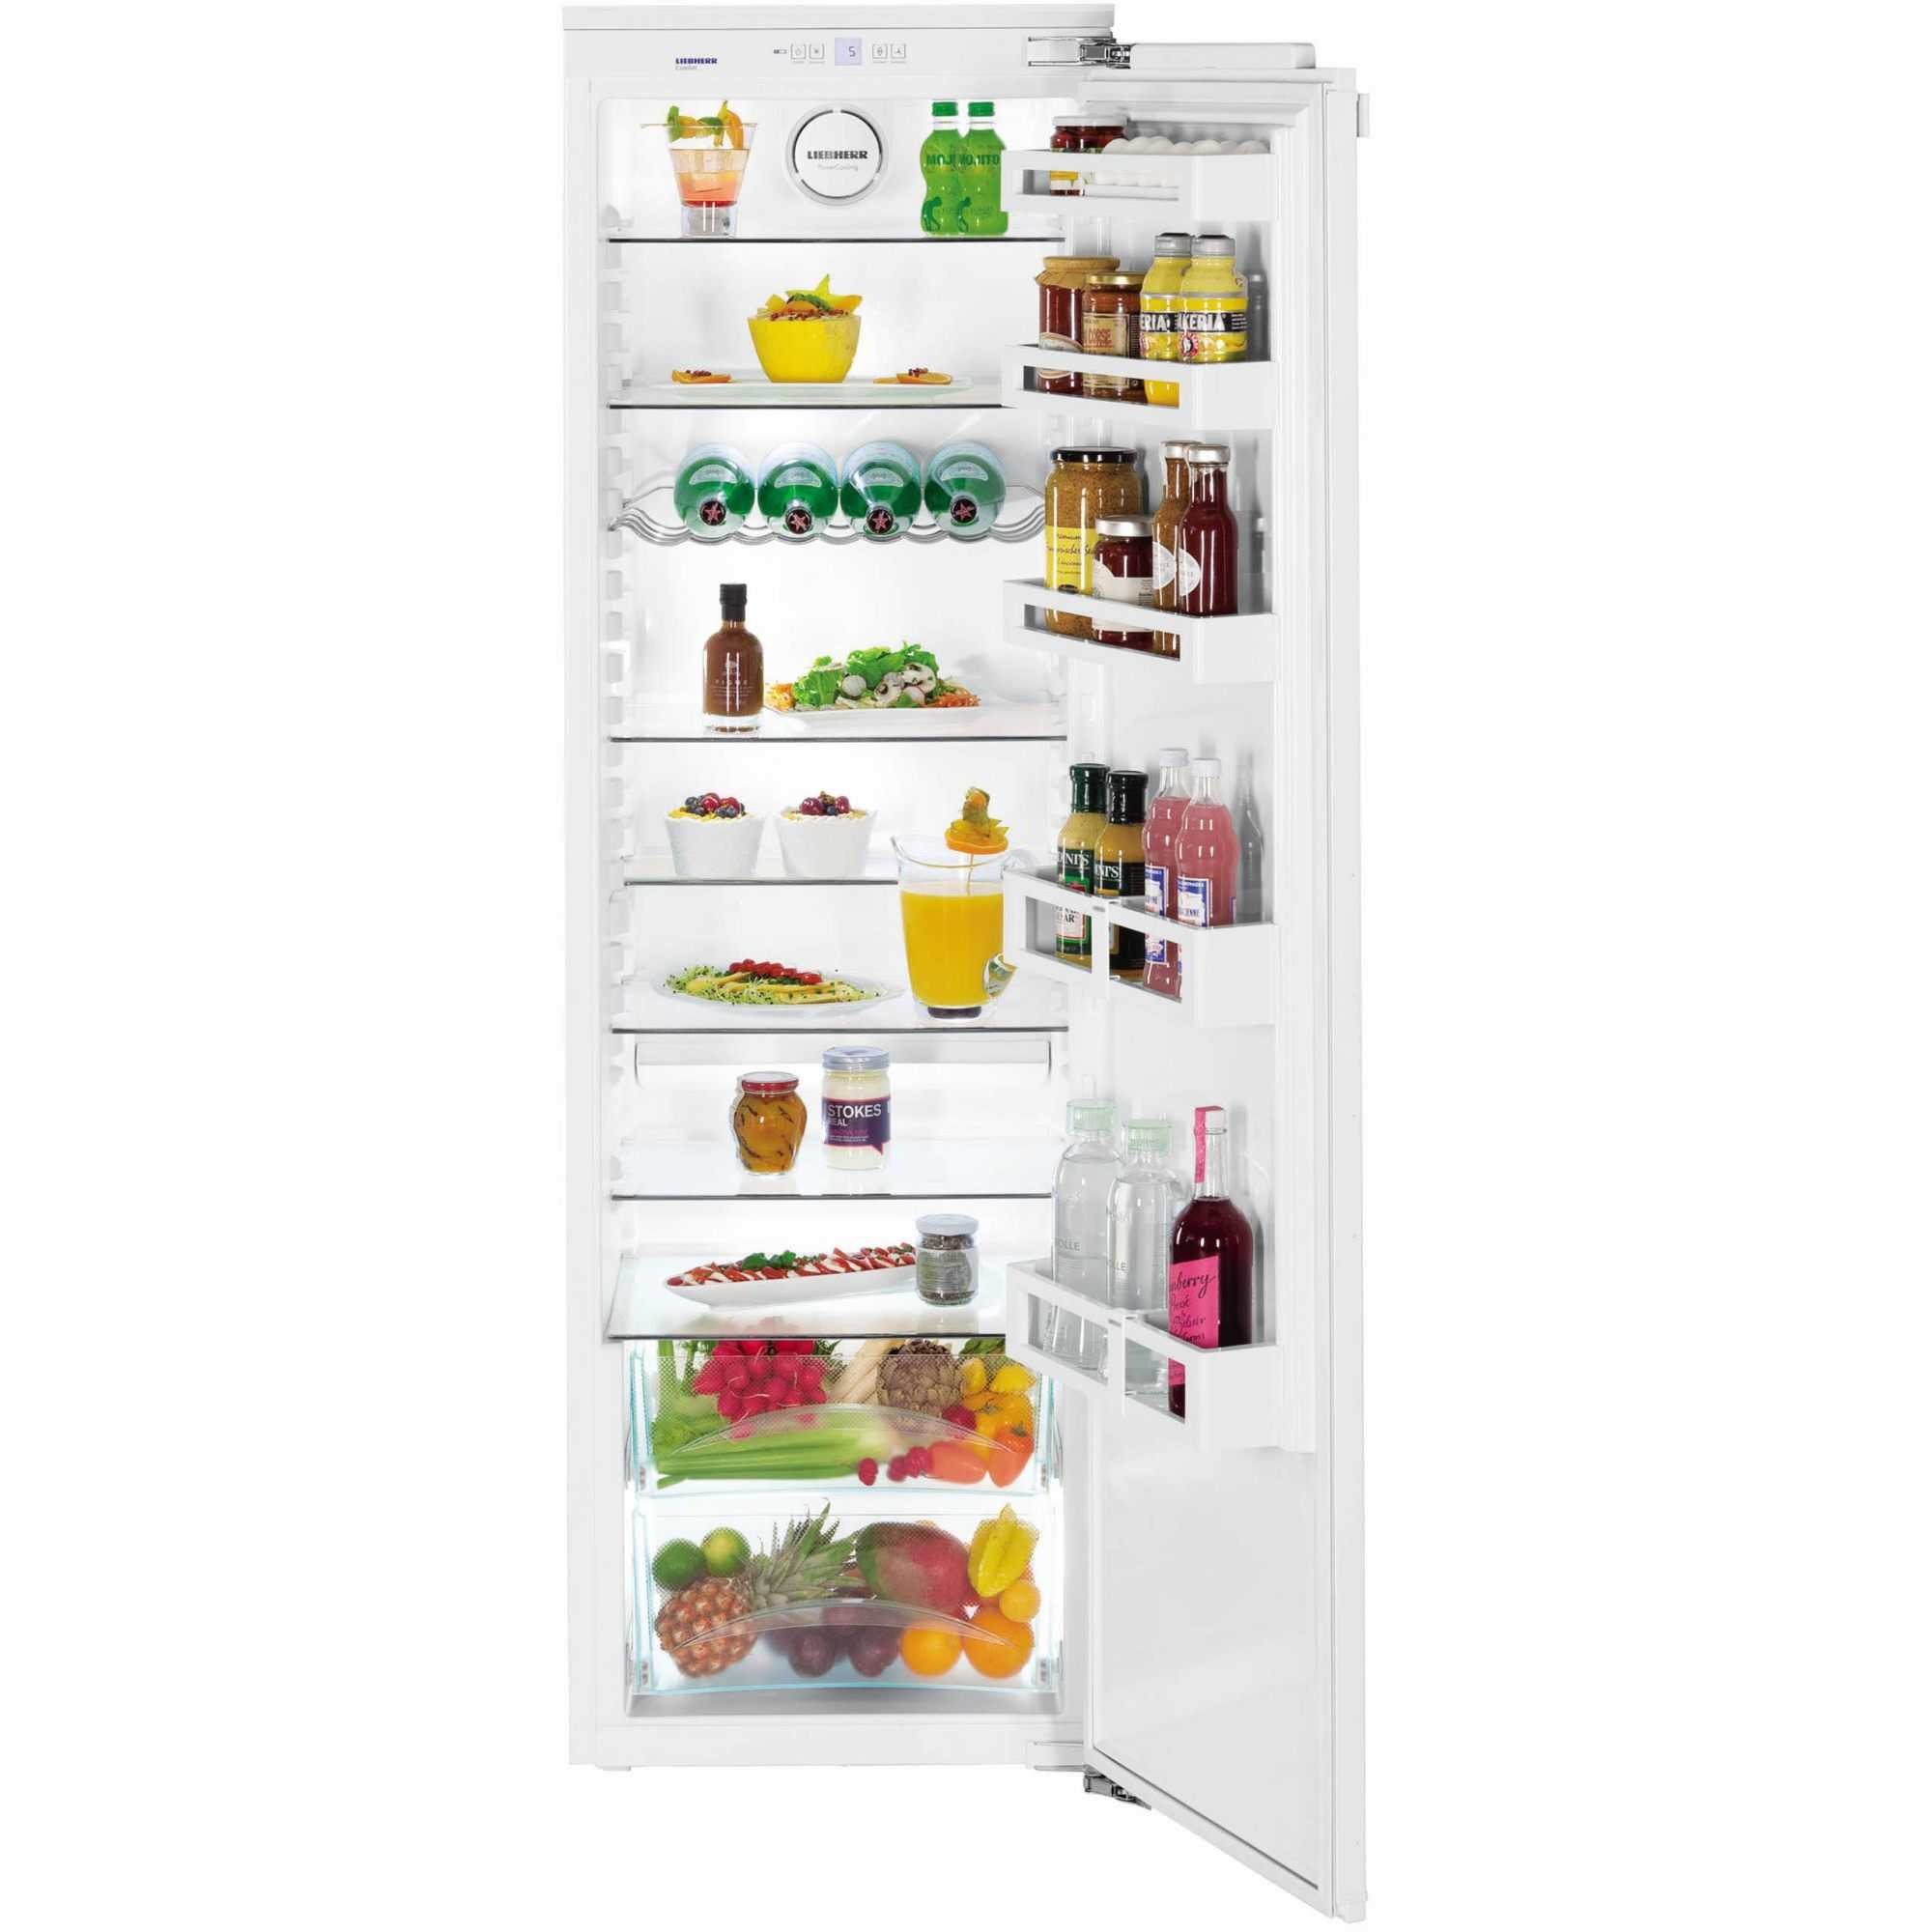 Ik 3520 comfort
встраиваемый холодильник